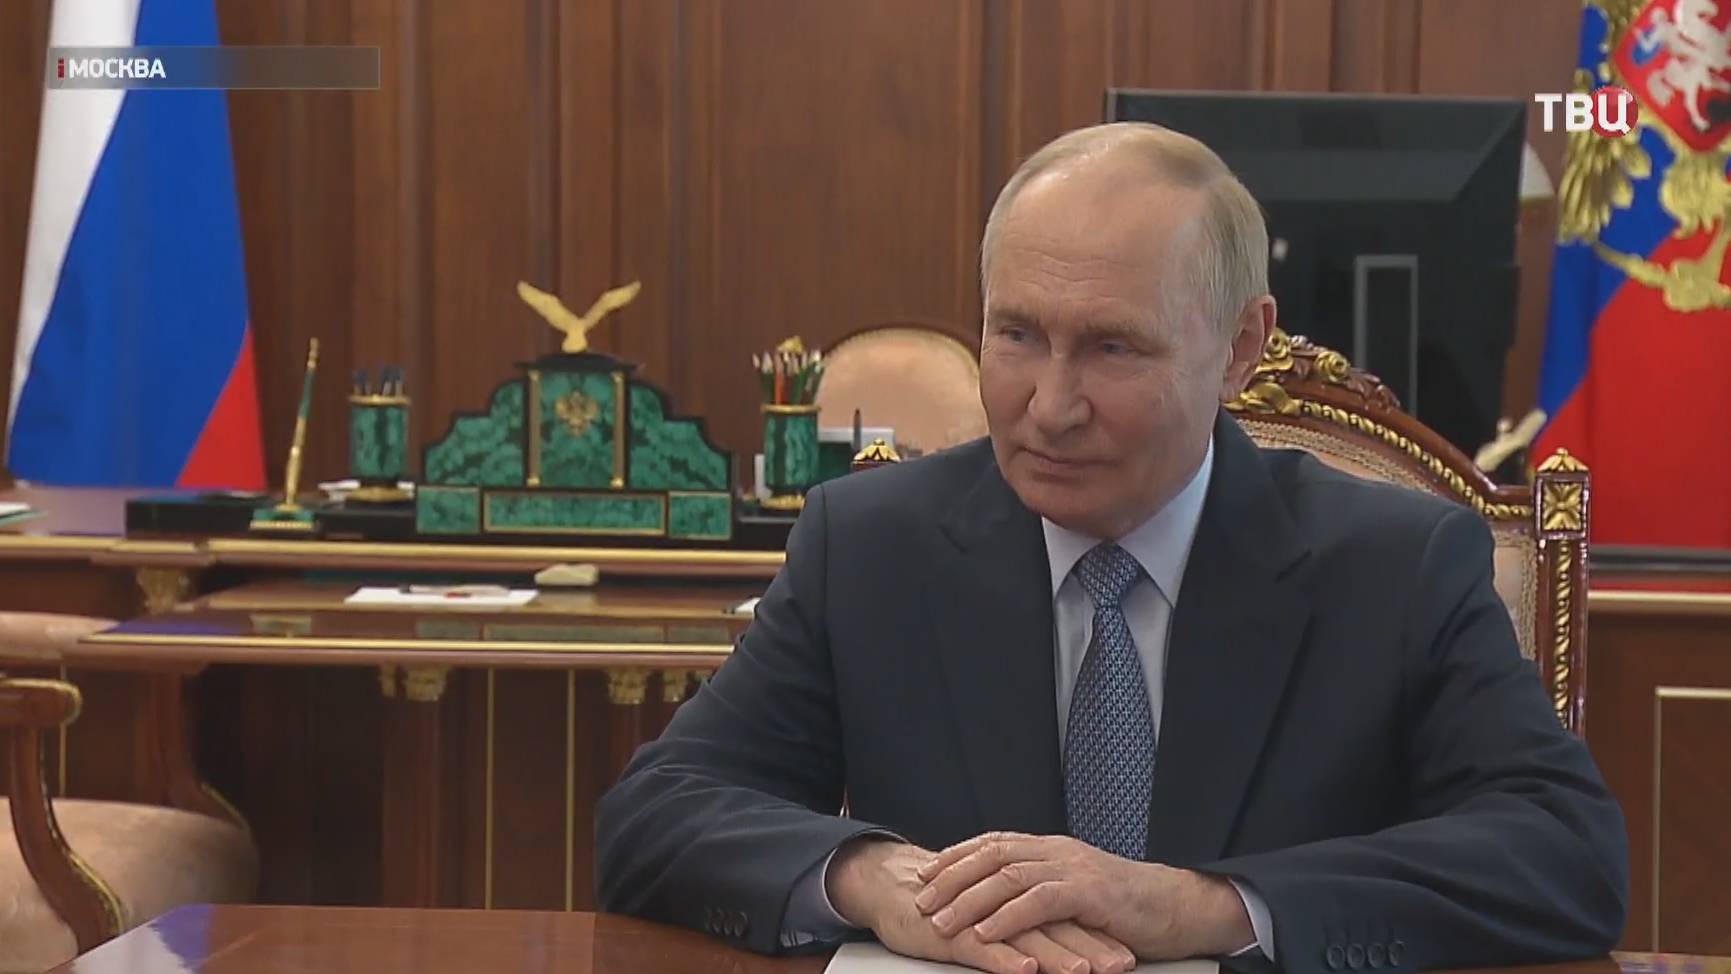 Путин встретился в Кремле с губернатором Мурманской области / События на ТВЦ